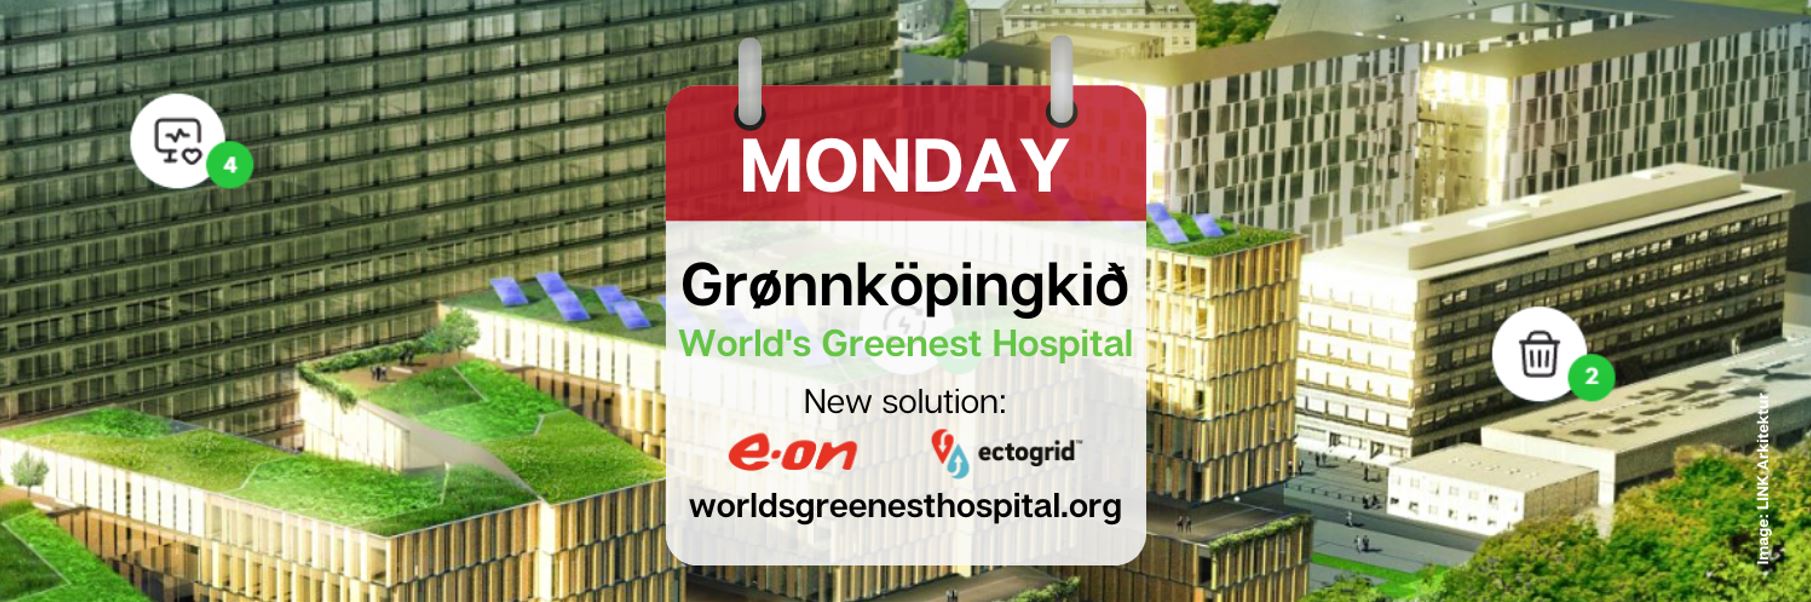 Grønnköpingkið Monday: New Solution From E.ON ectogrid™